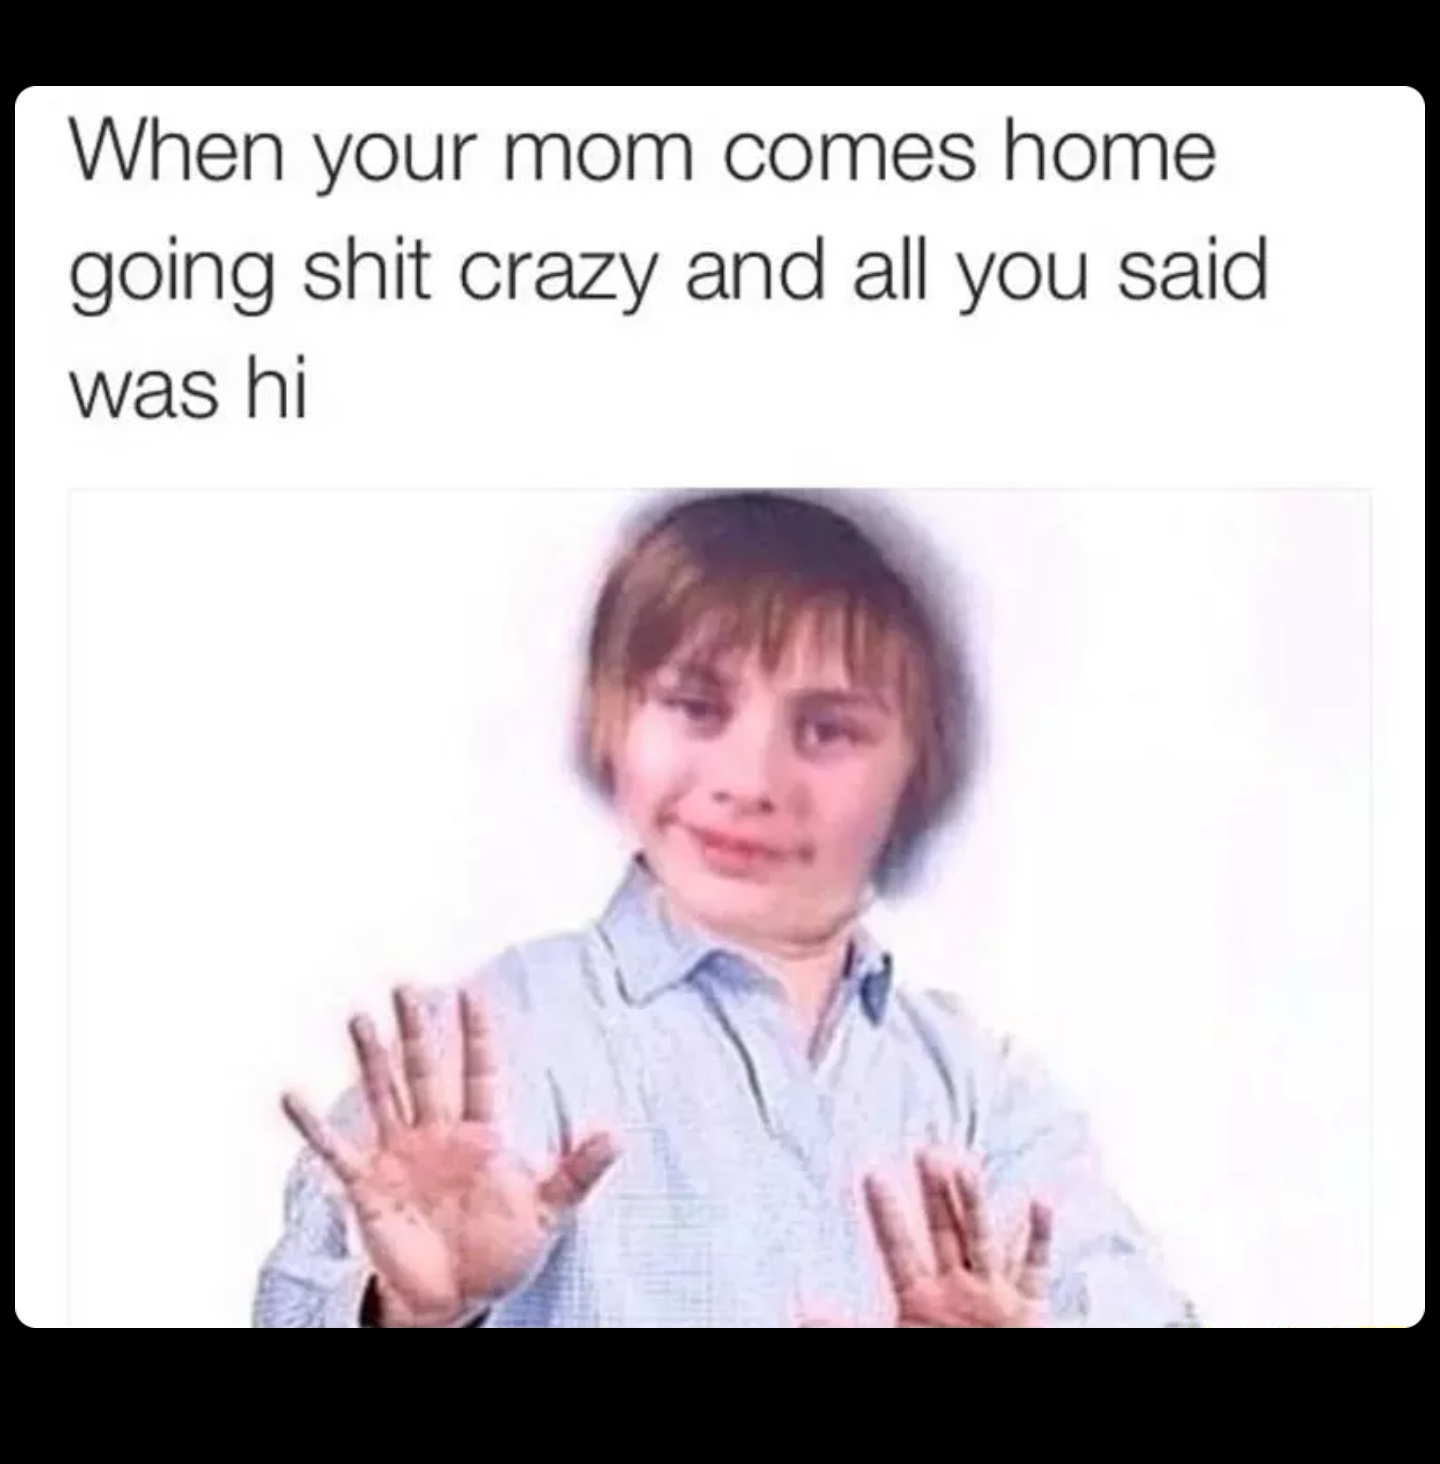 Moms be like - meme